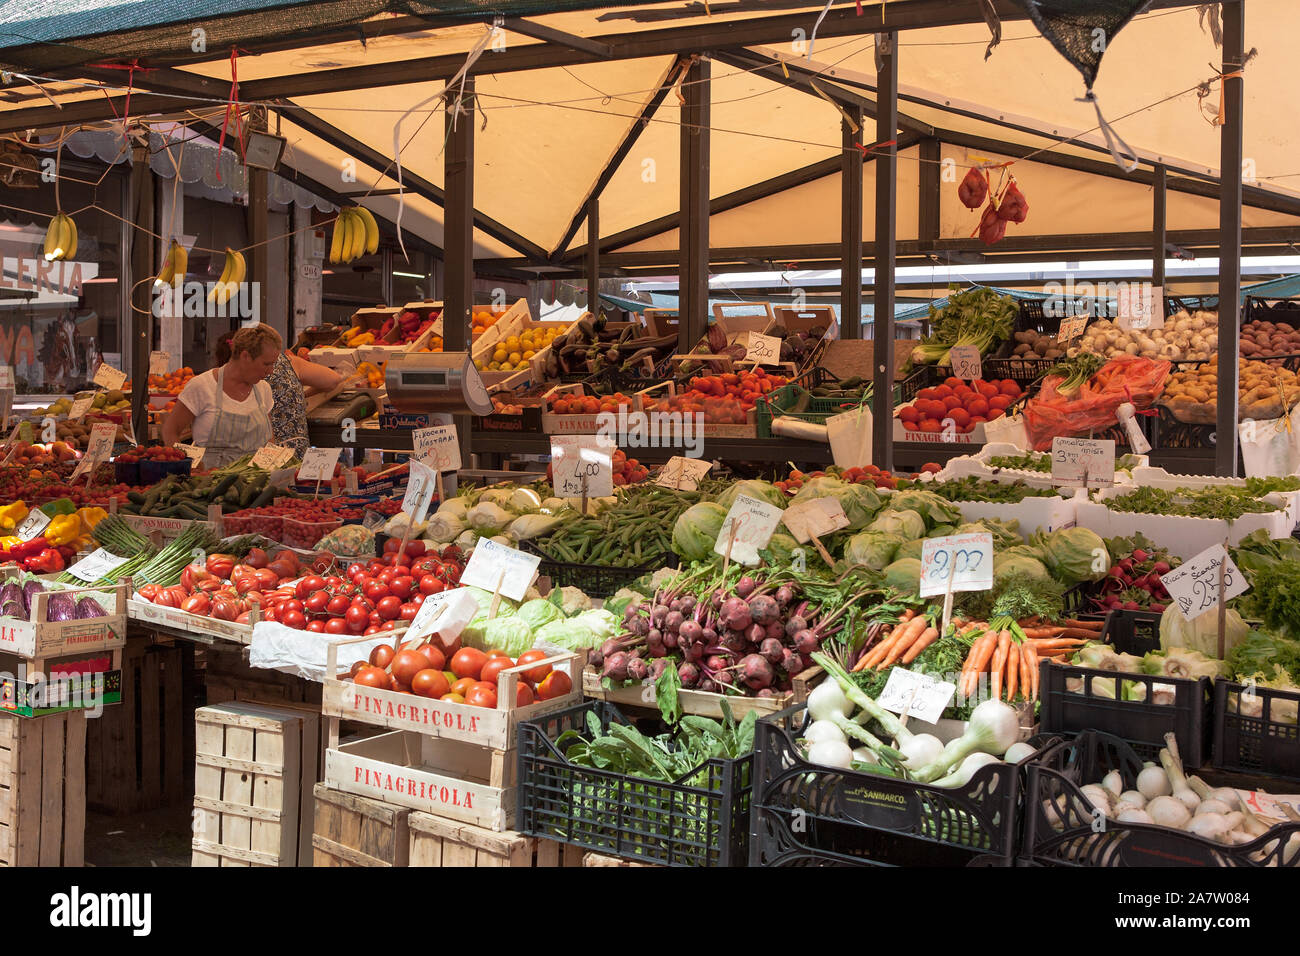 Mercato di frutta e verdura, Campo della Pescheria, San Polo, Venezia, Italia Foto Stock